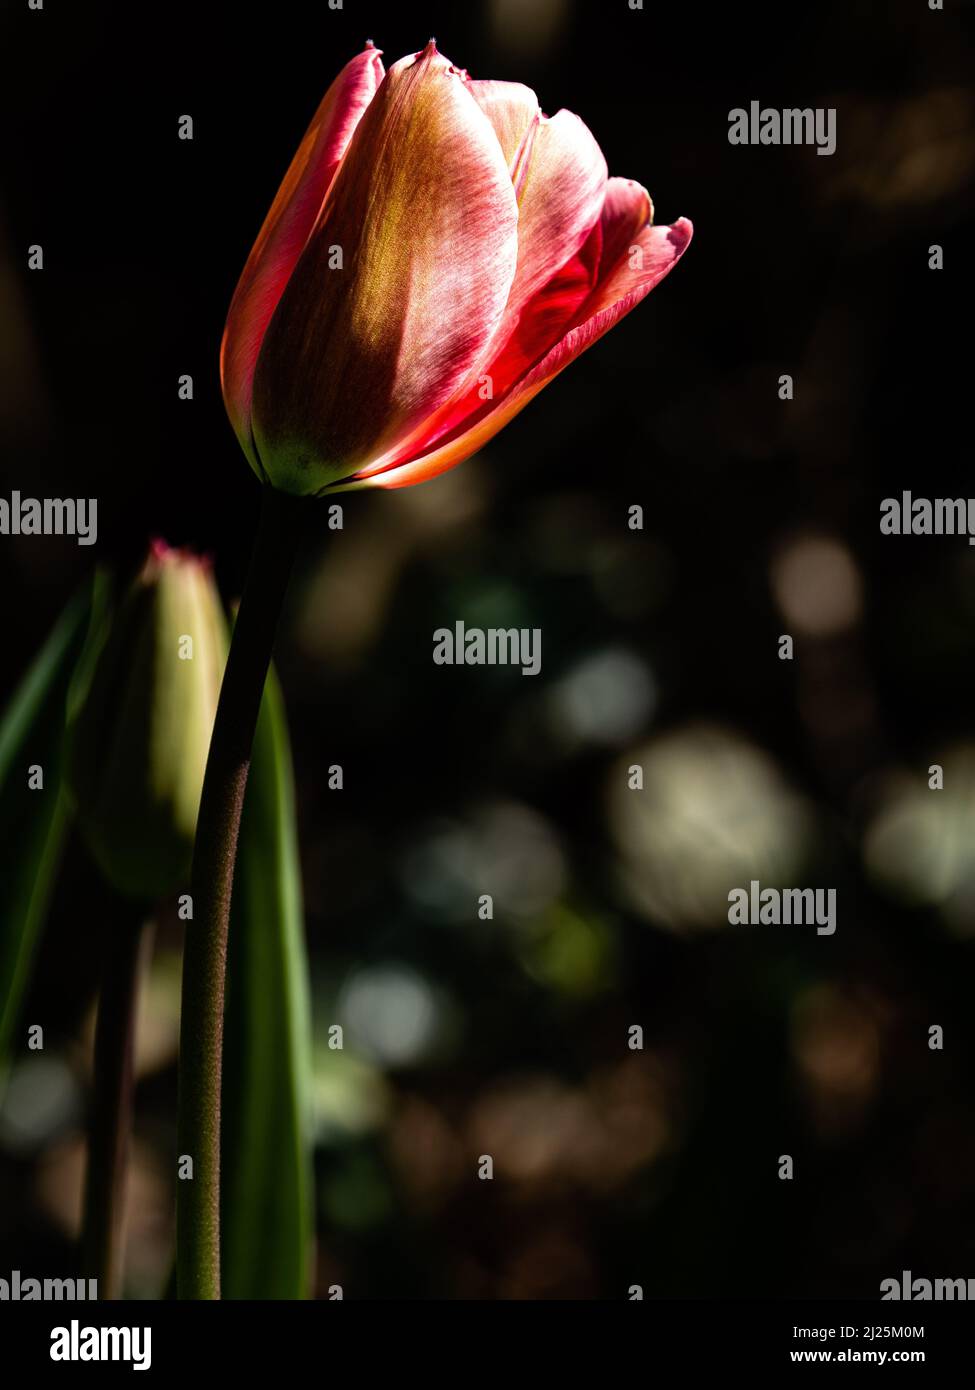 A single tulip in a garden, England Stock Photo